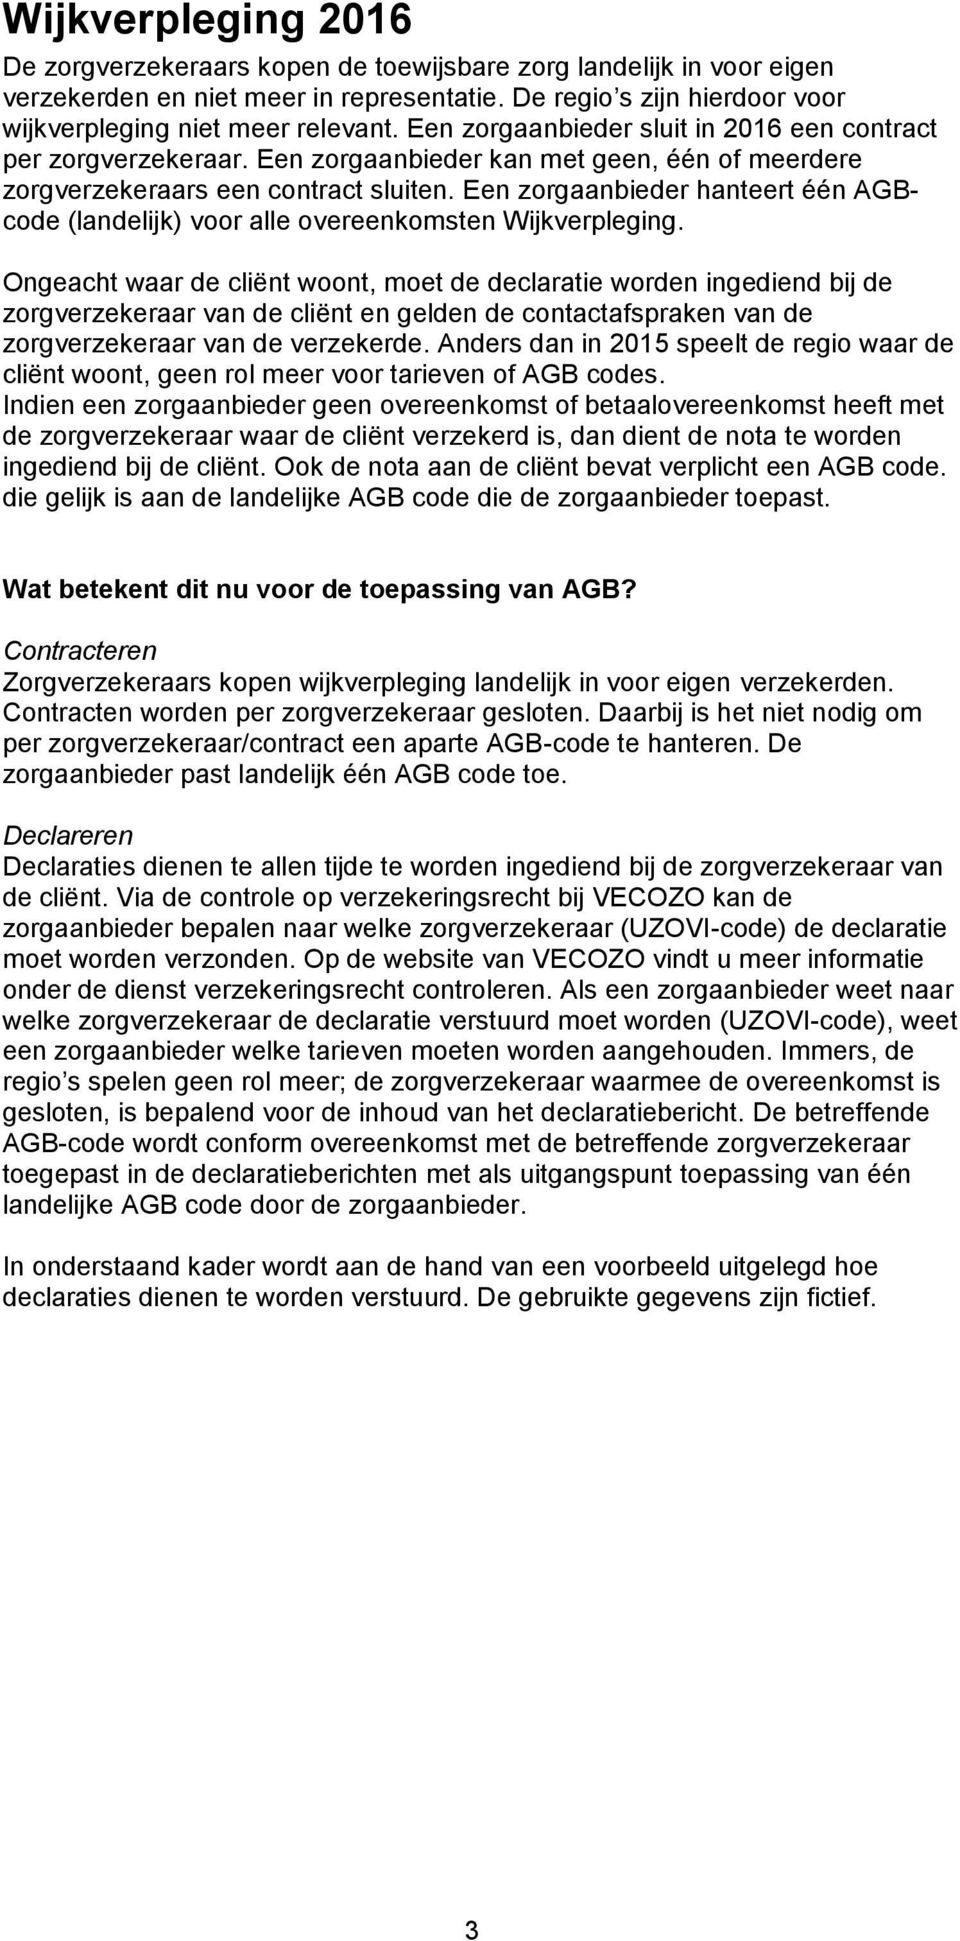 Een zorgaanbieder hanteert één AGBcode (landelijk) voor alle overeenkomsten Wijkverpleging.